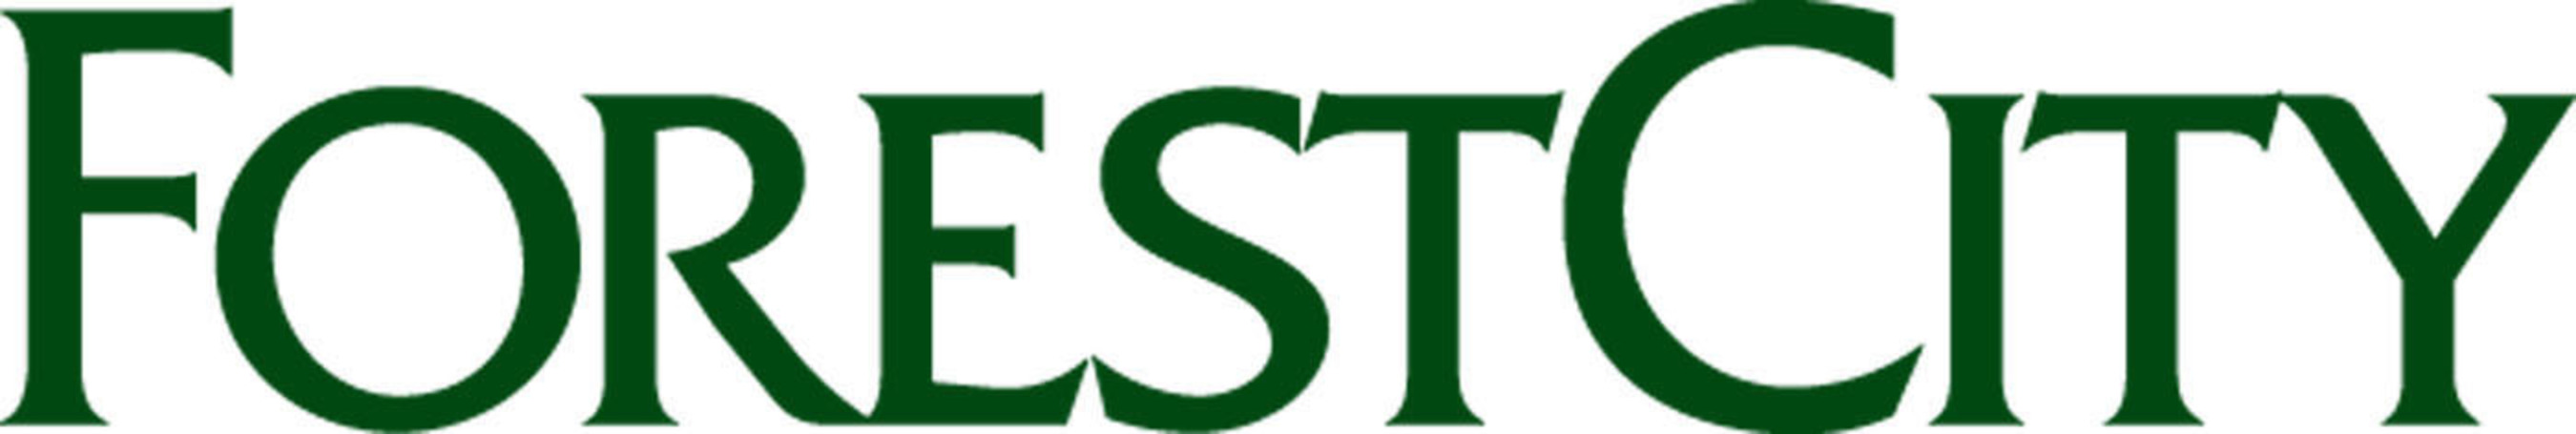 Forest City Enterprises, Inc. Logo.